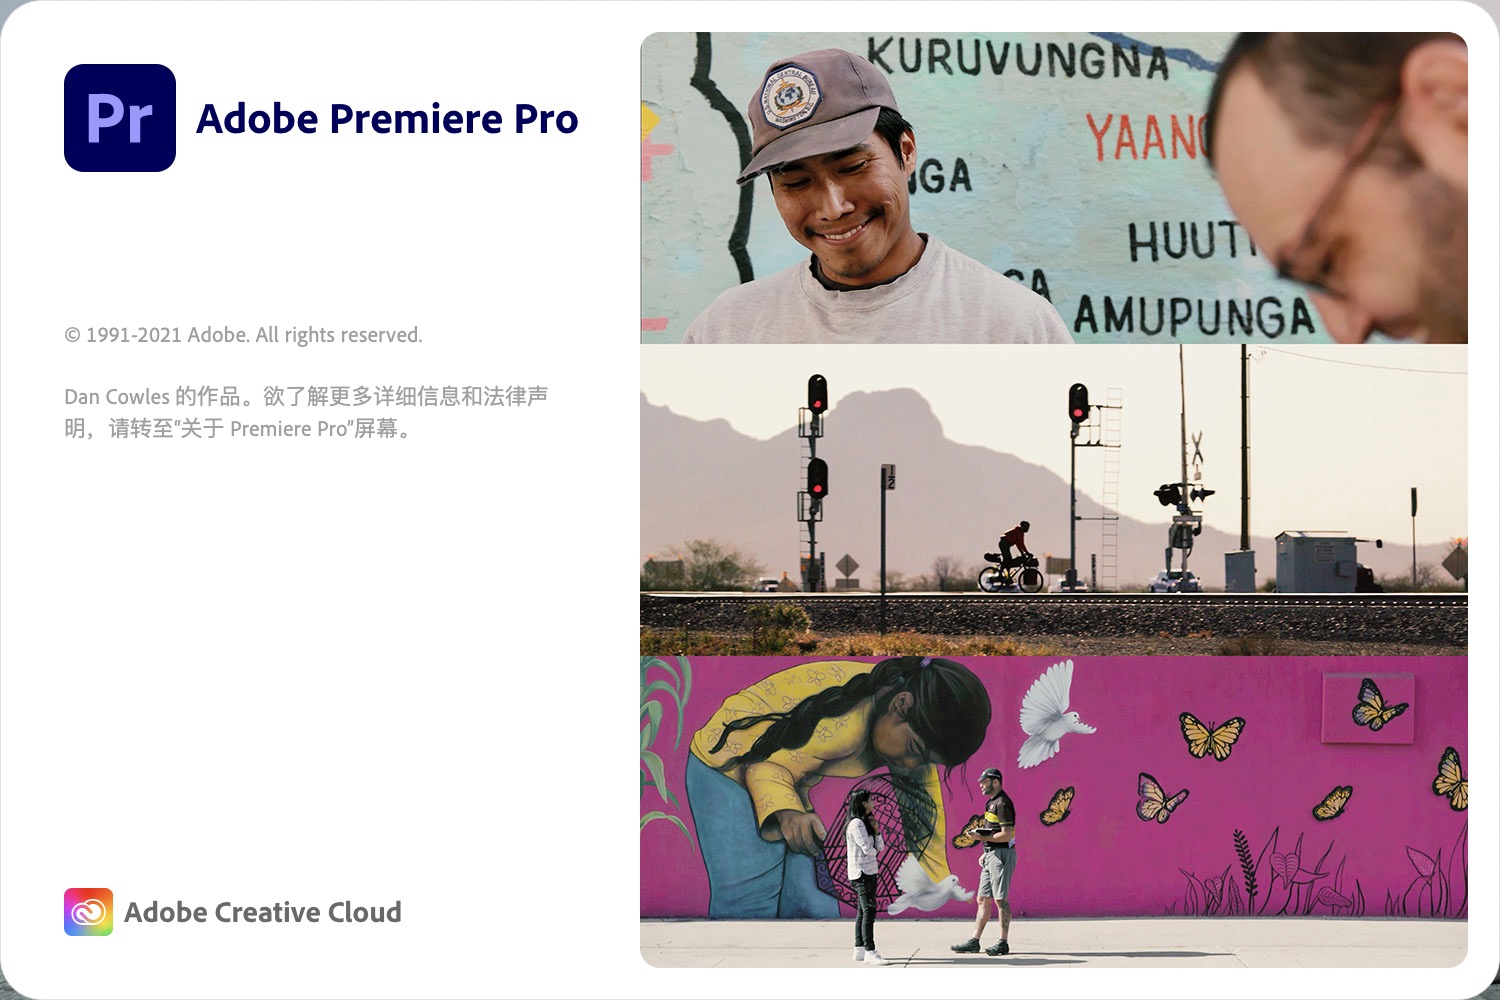 Adobe Premiere Pro 2021 for Mac